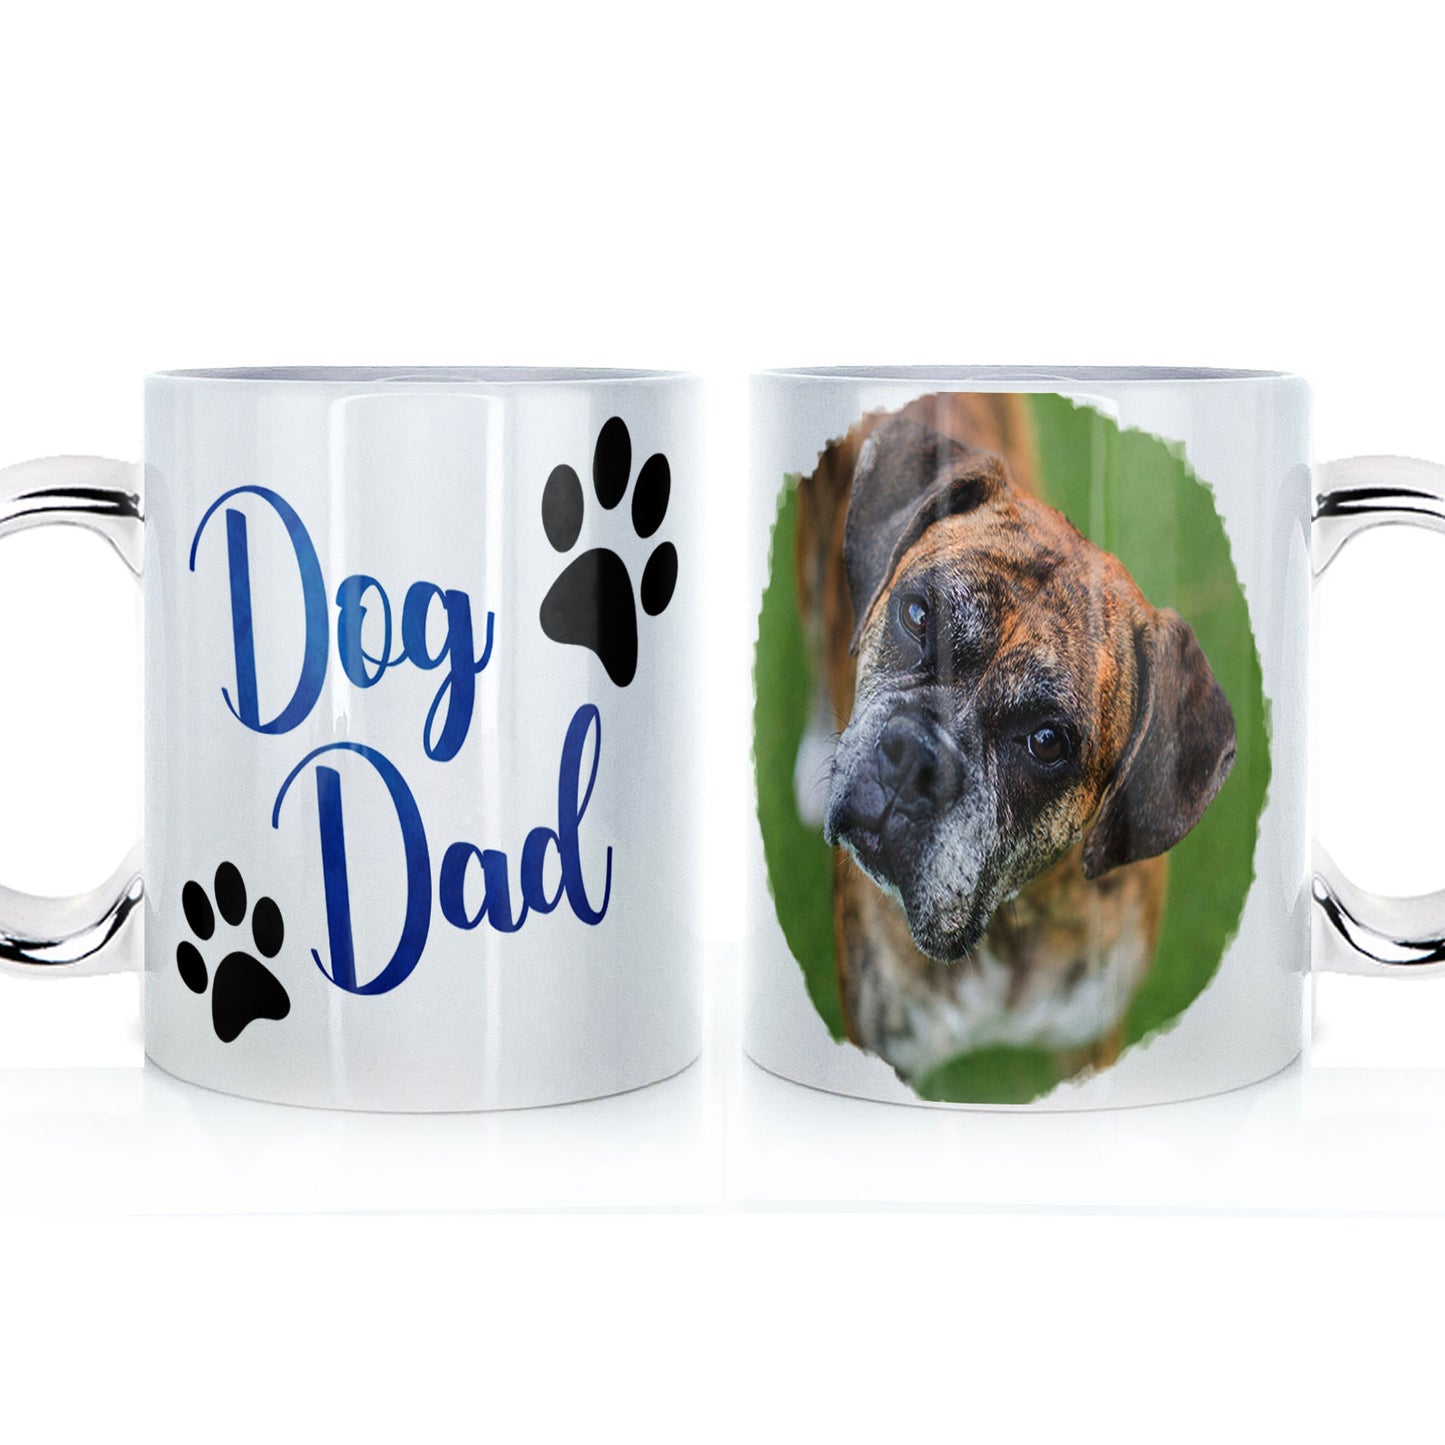 Personalised Father's Day Mug - Dog Dad Photo Upload